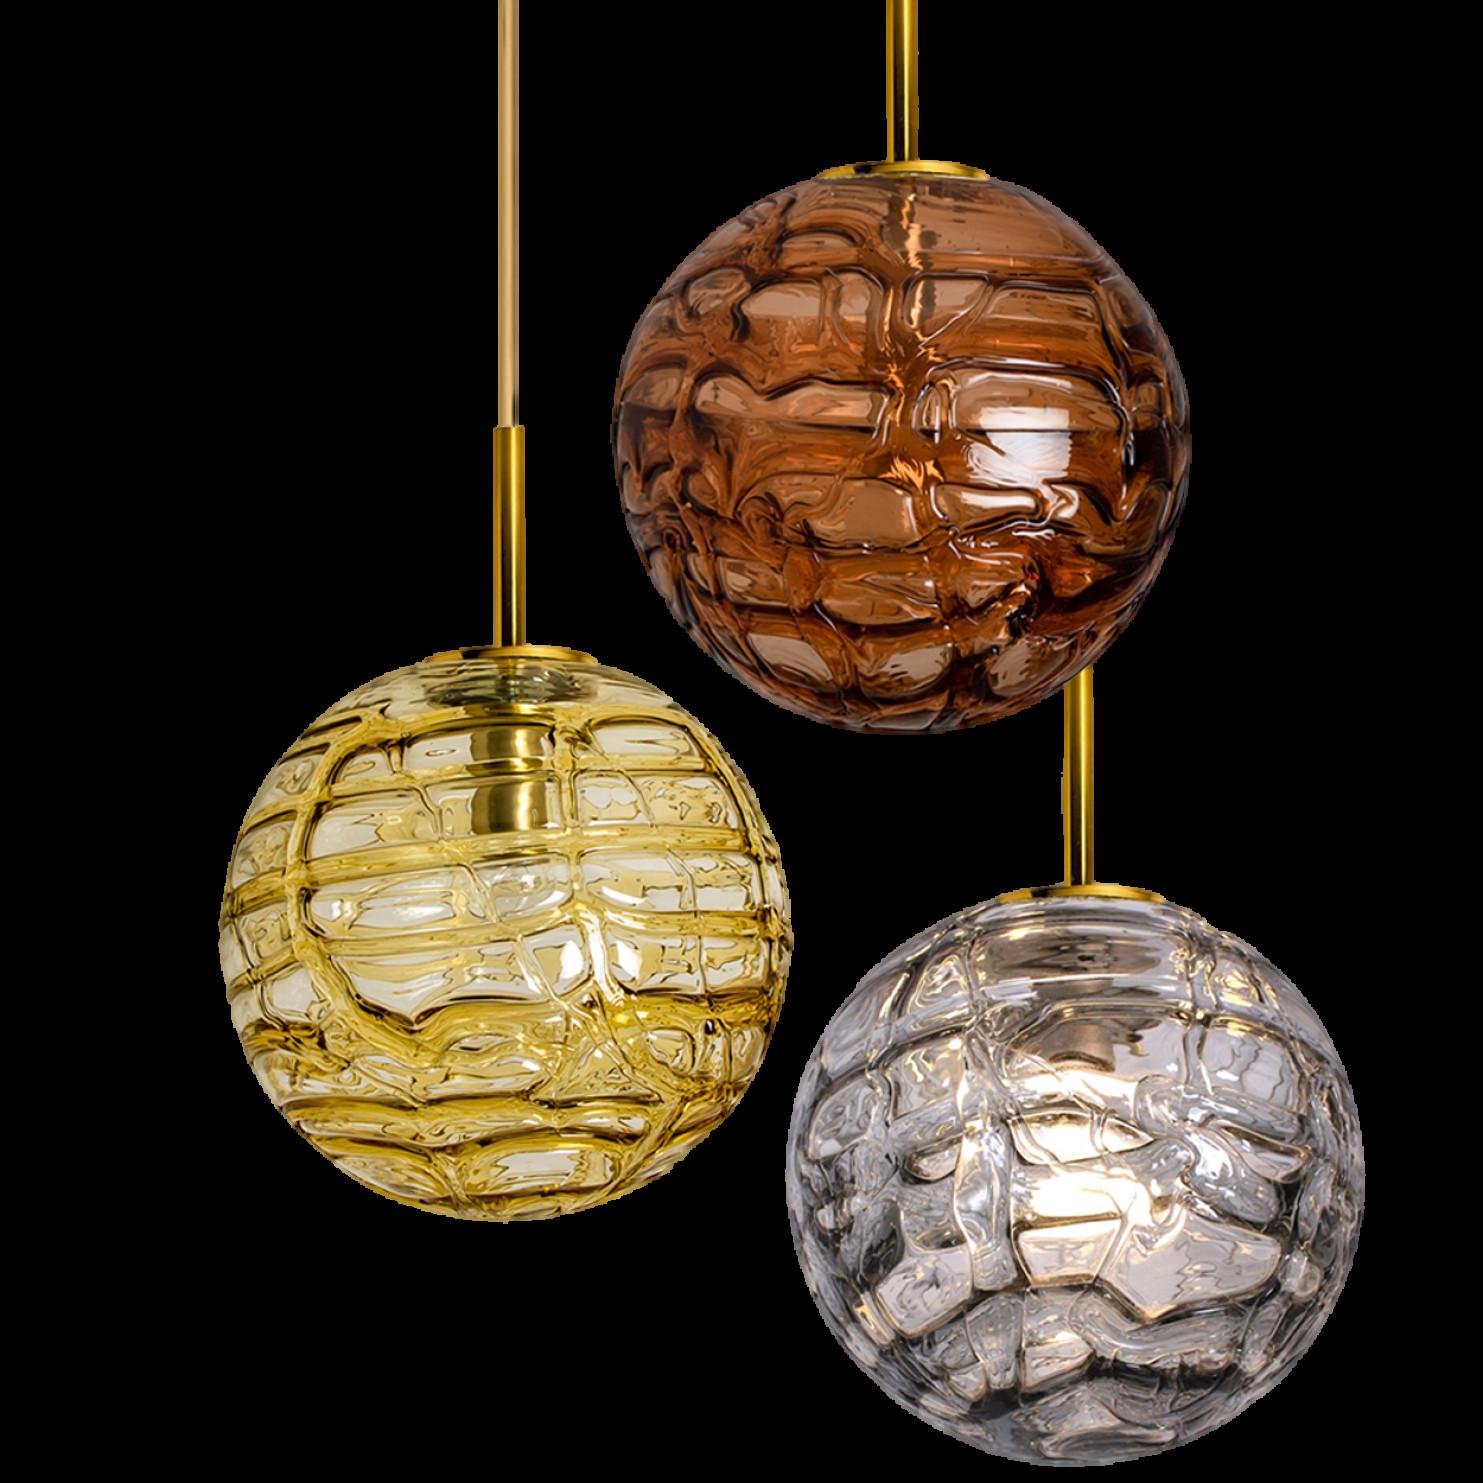 1 des 3 globes Doria Leuchten (en collaboration avec Murano) dans le style de Venini, fabriqués, vers 1960. Une véritable pièce de résistance.

Abat-jour haut de gamme en cristal épais de Murano composé de verres overlay de couleur miel chaud/jaune